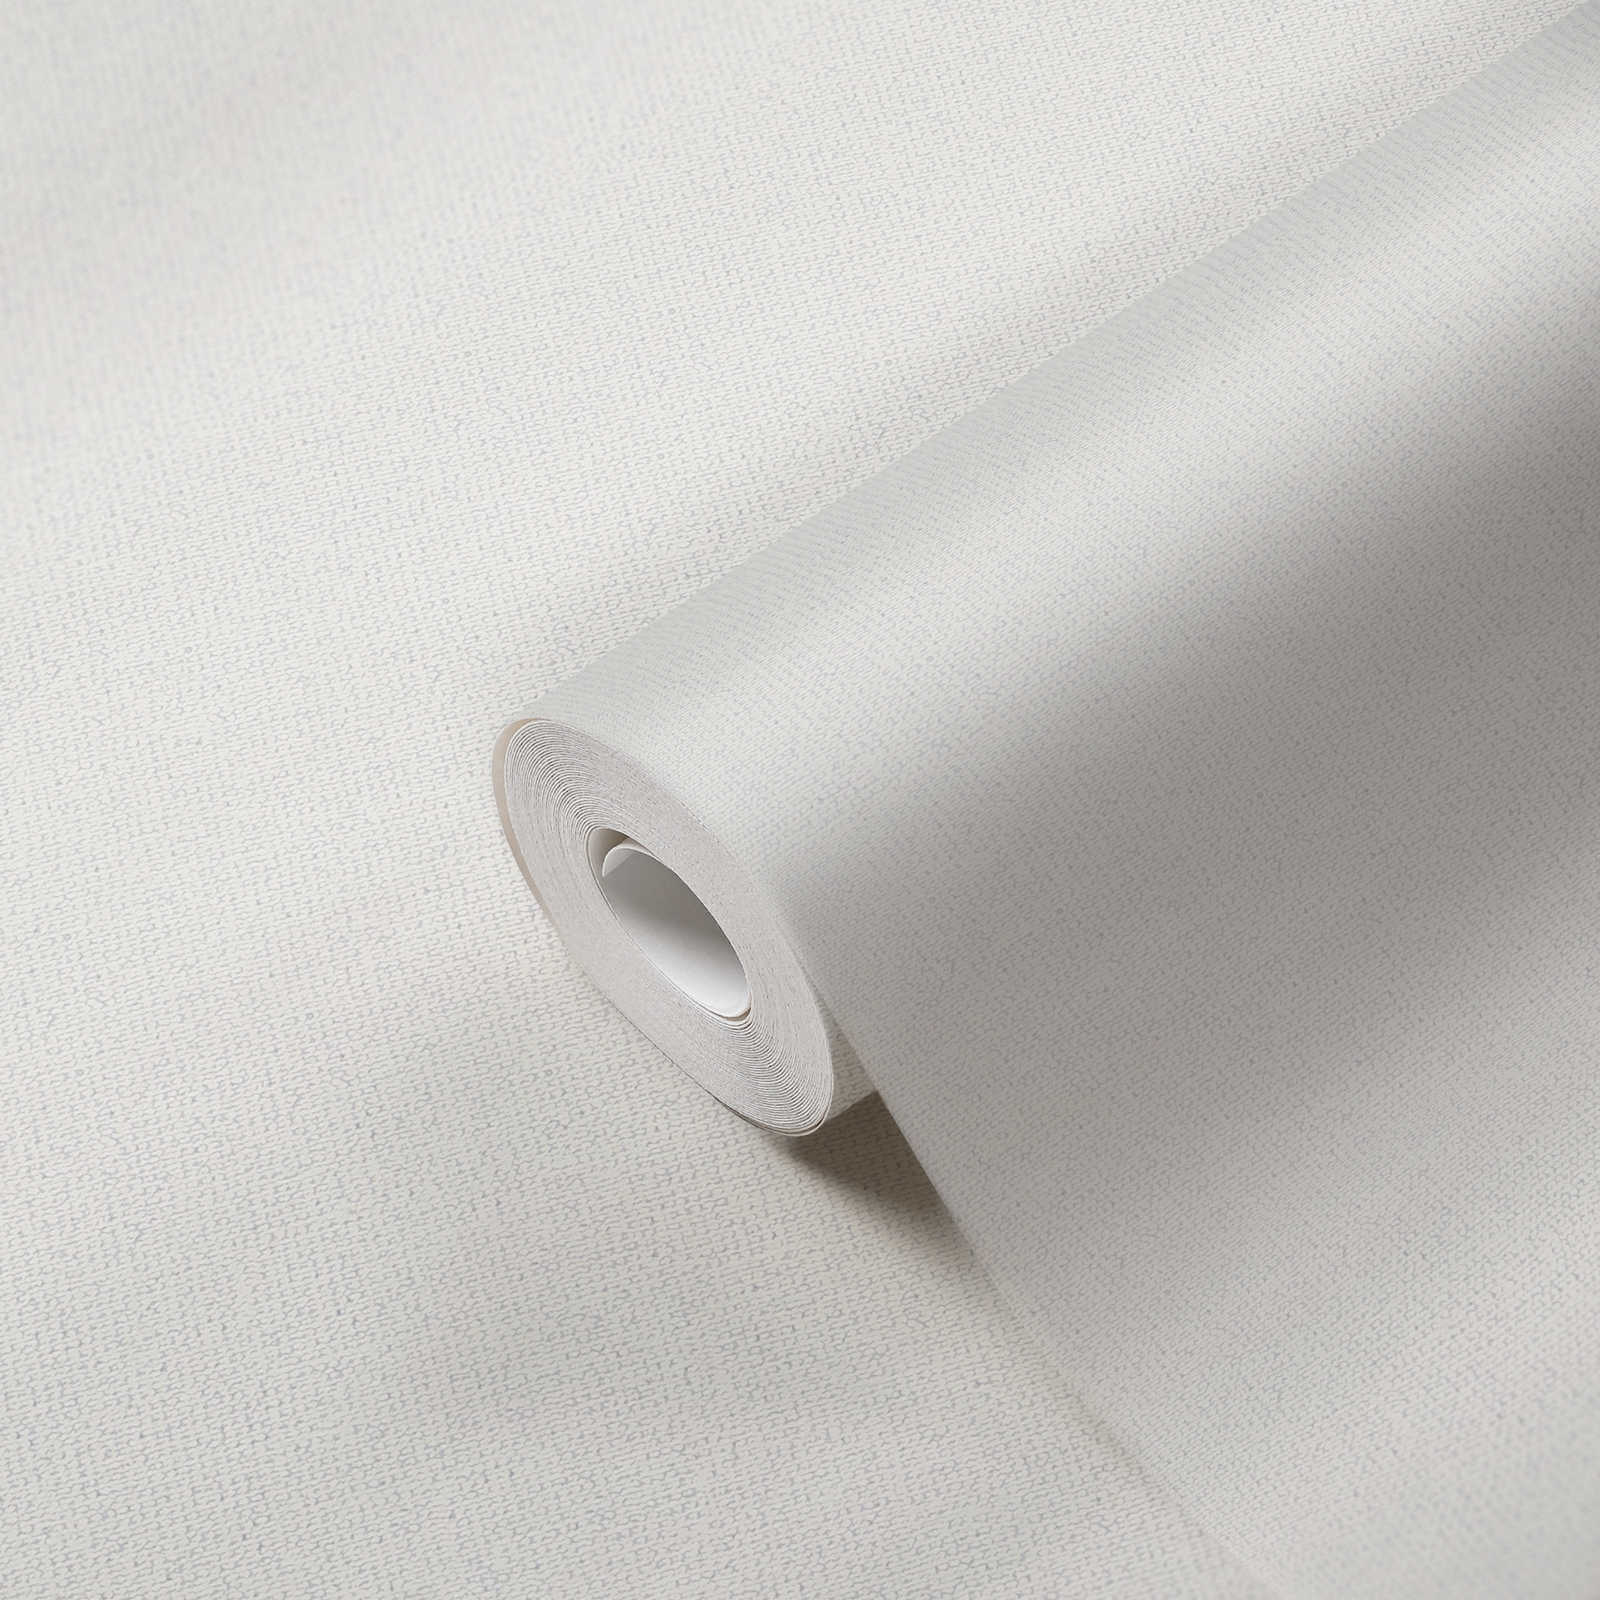             Papier peint uni imitation lin avec structure mate - blanc
        